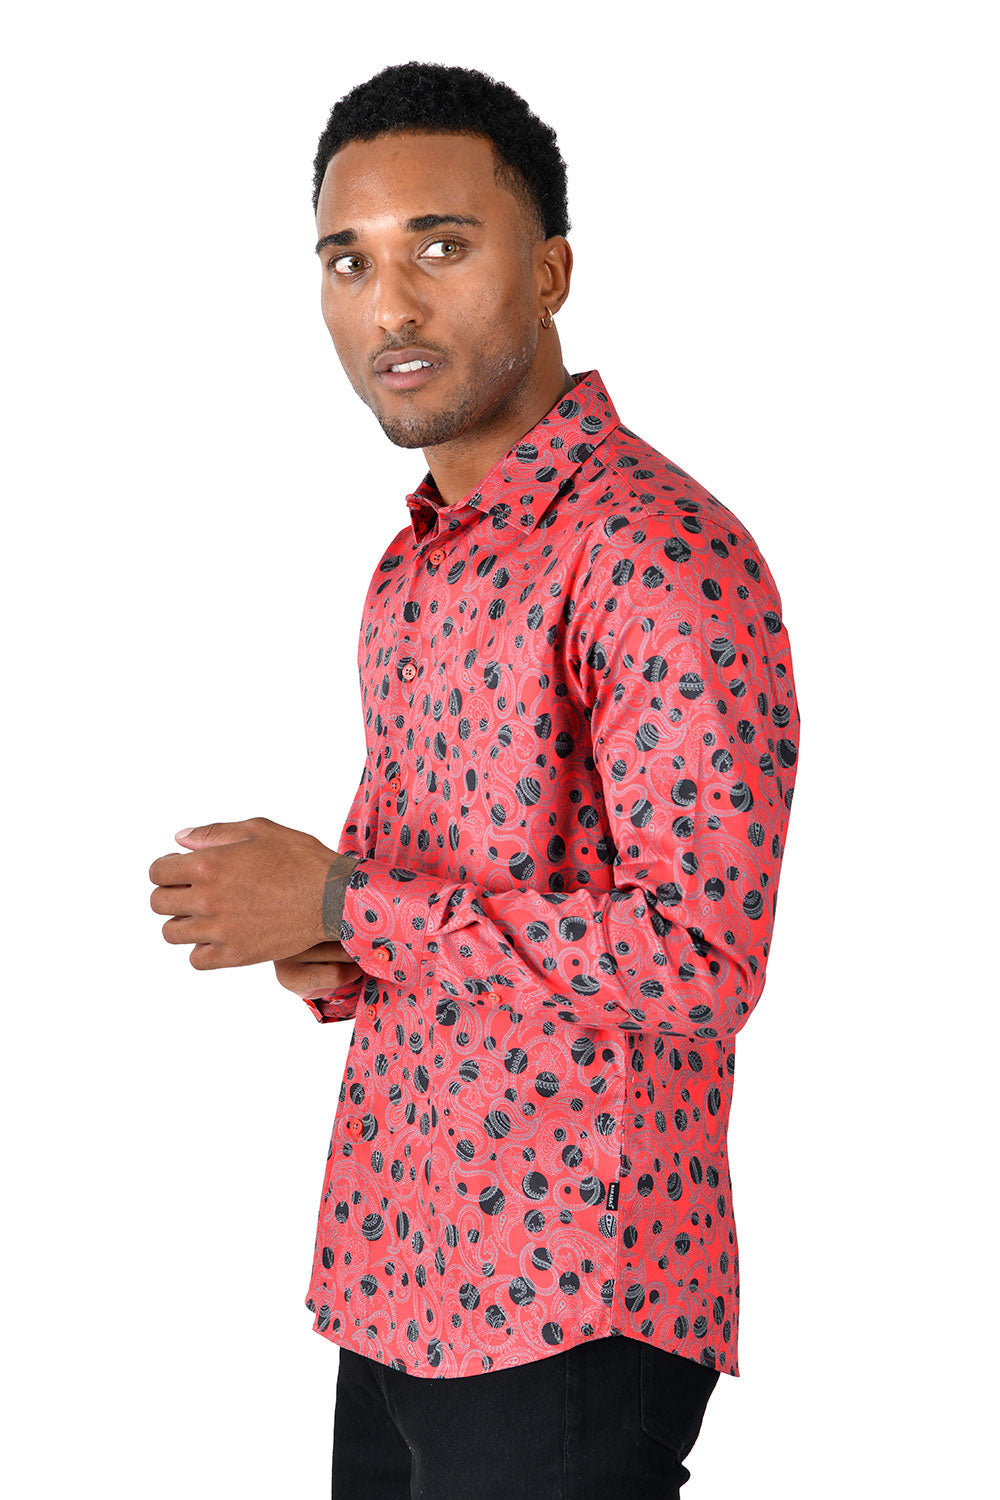 BARABAS men's floral paisley polka dotted printed shirts B339 Red black